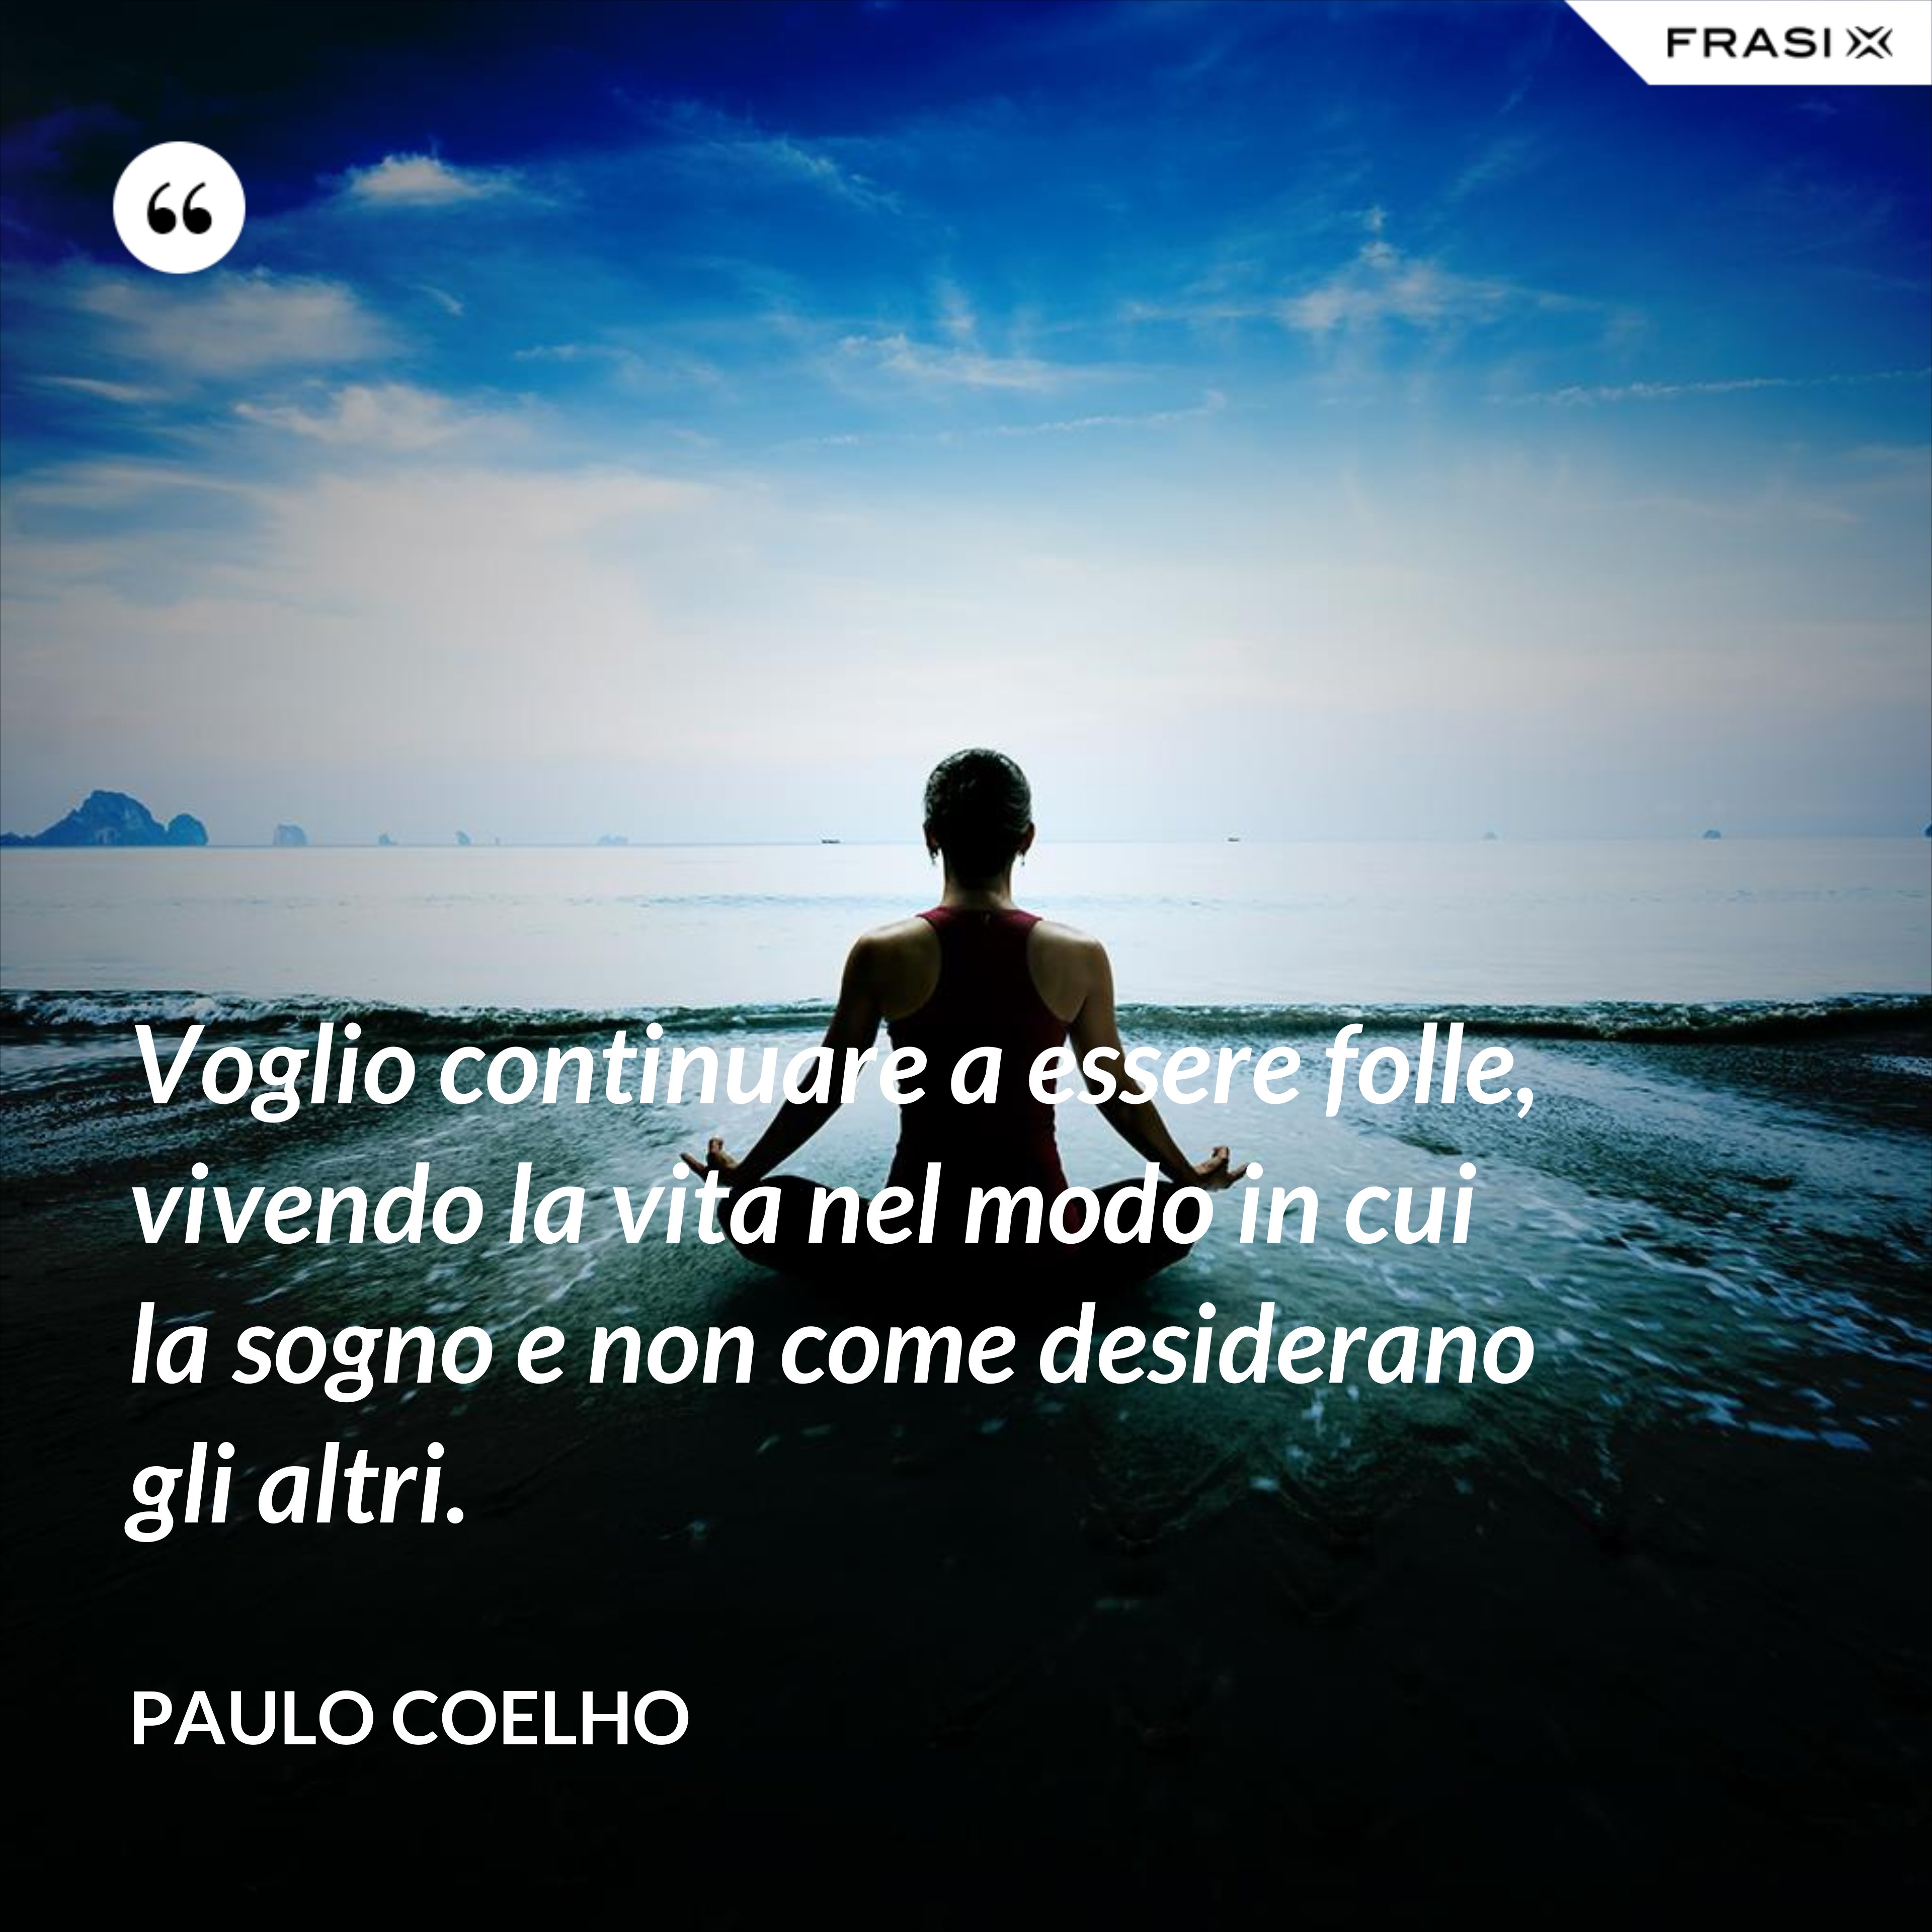 Voglio continuare a essere folle, vivendo la vita nel modo in cui la sogno e non come desiderano gli altri. - Paulo Coelho